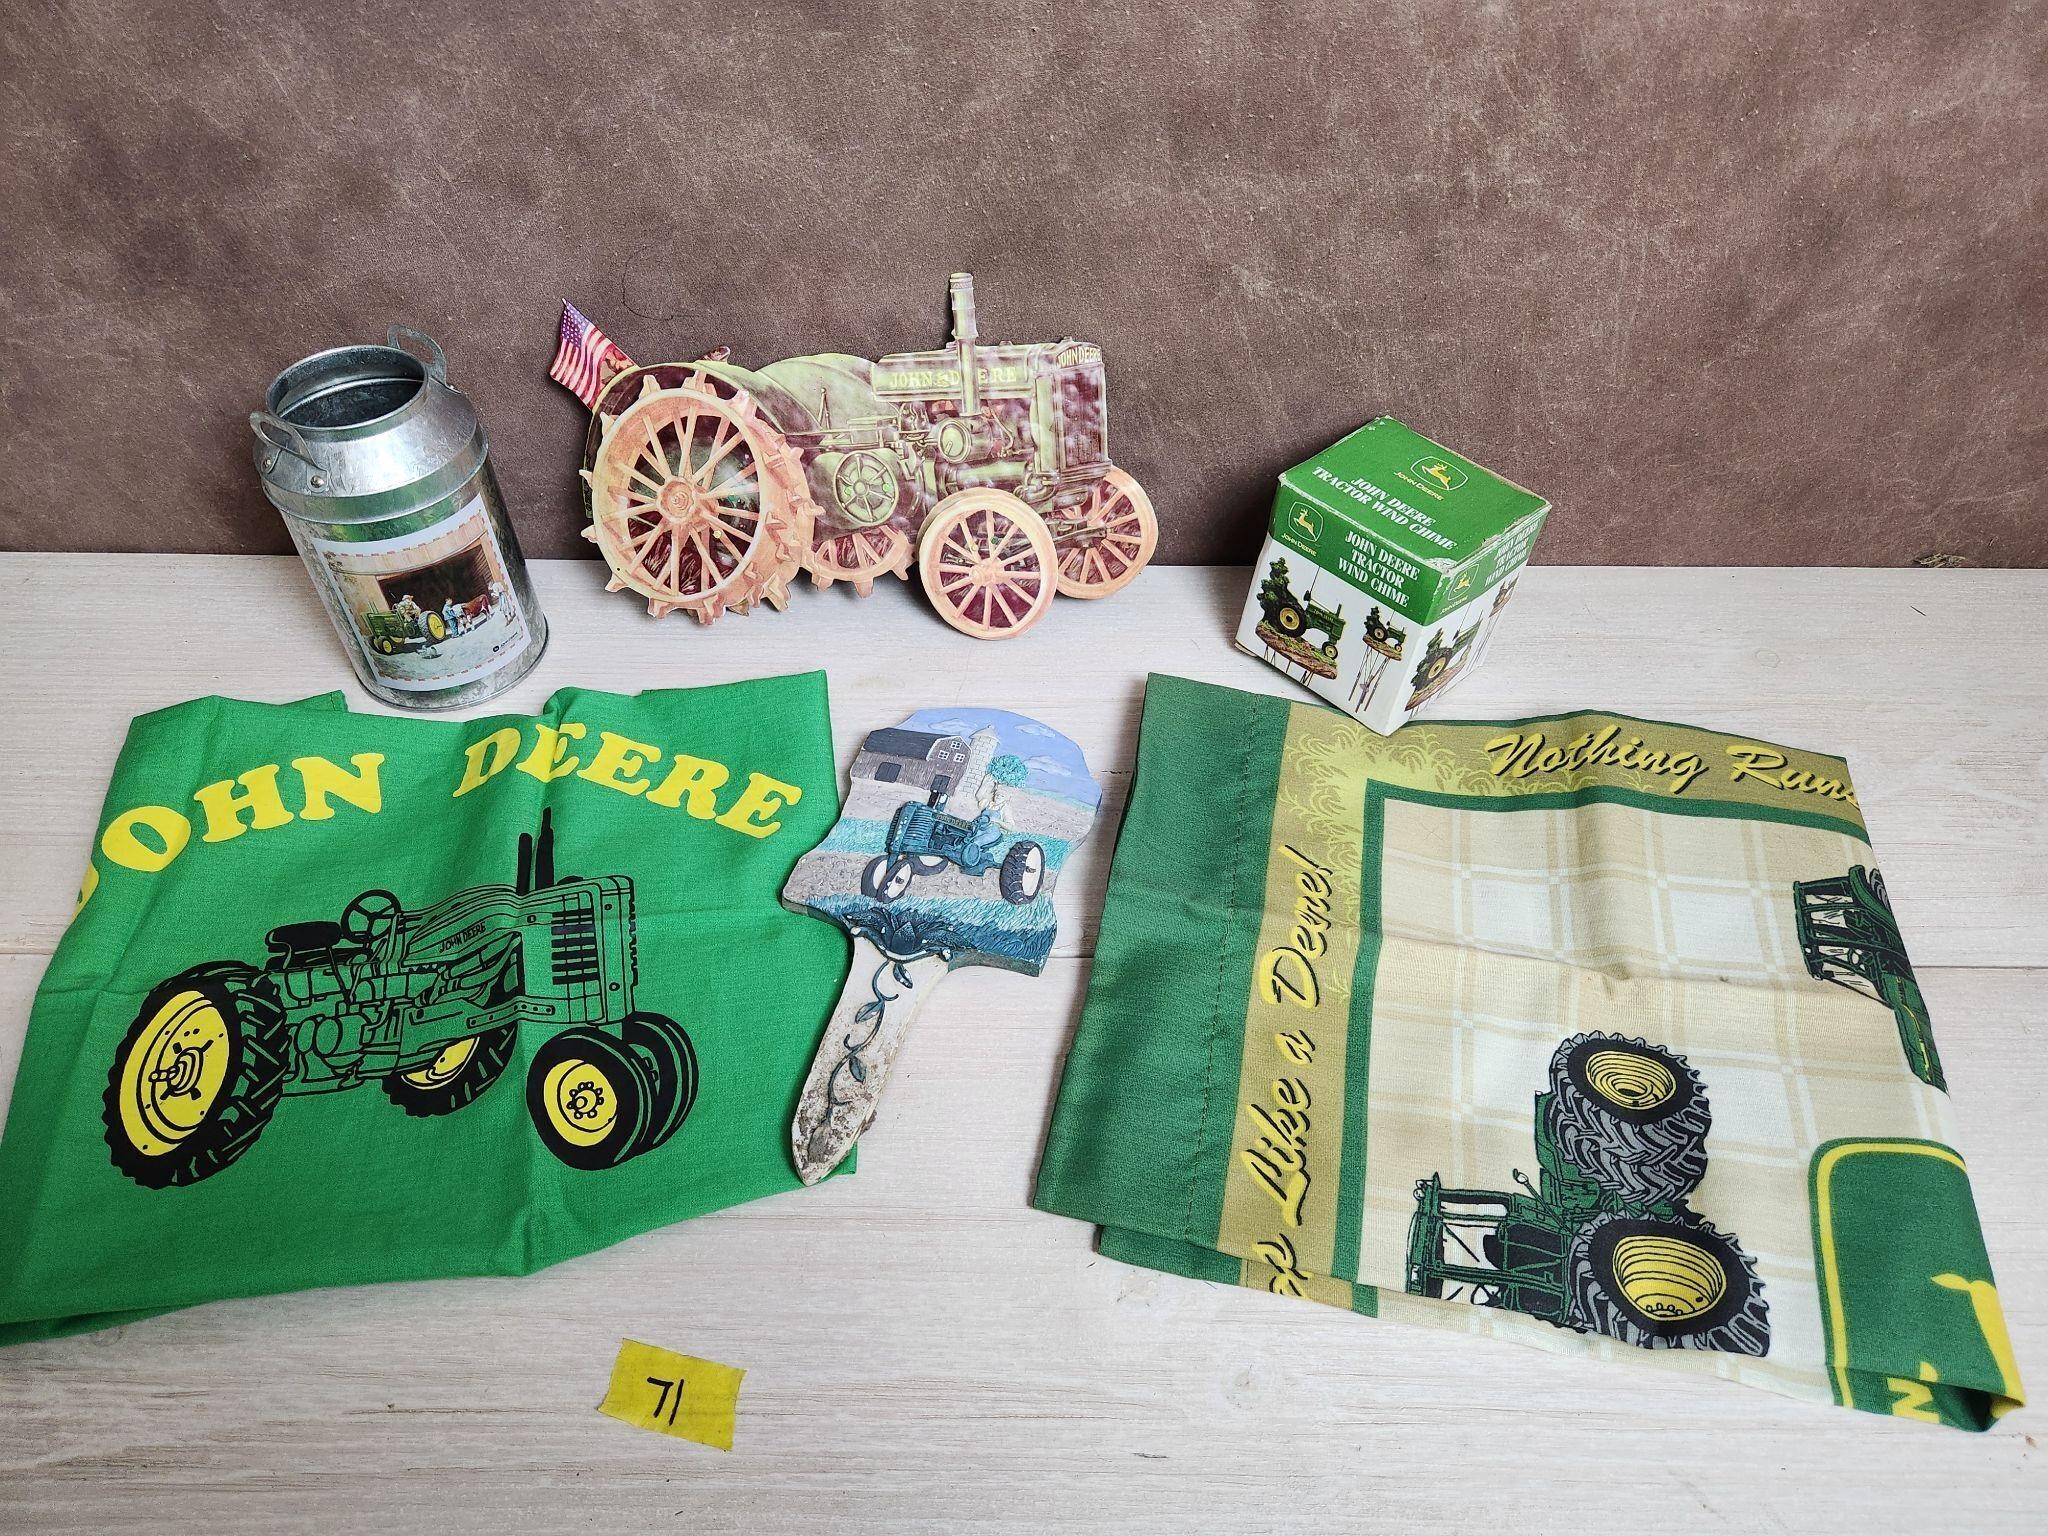 John Deere Metal Tractor/ Garden Items